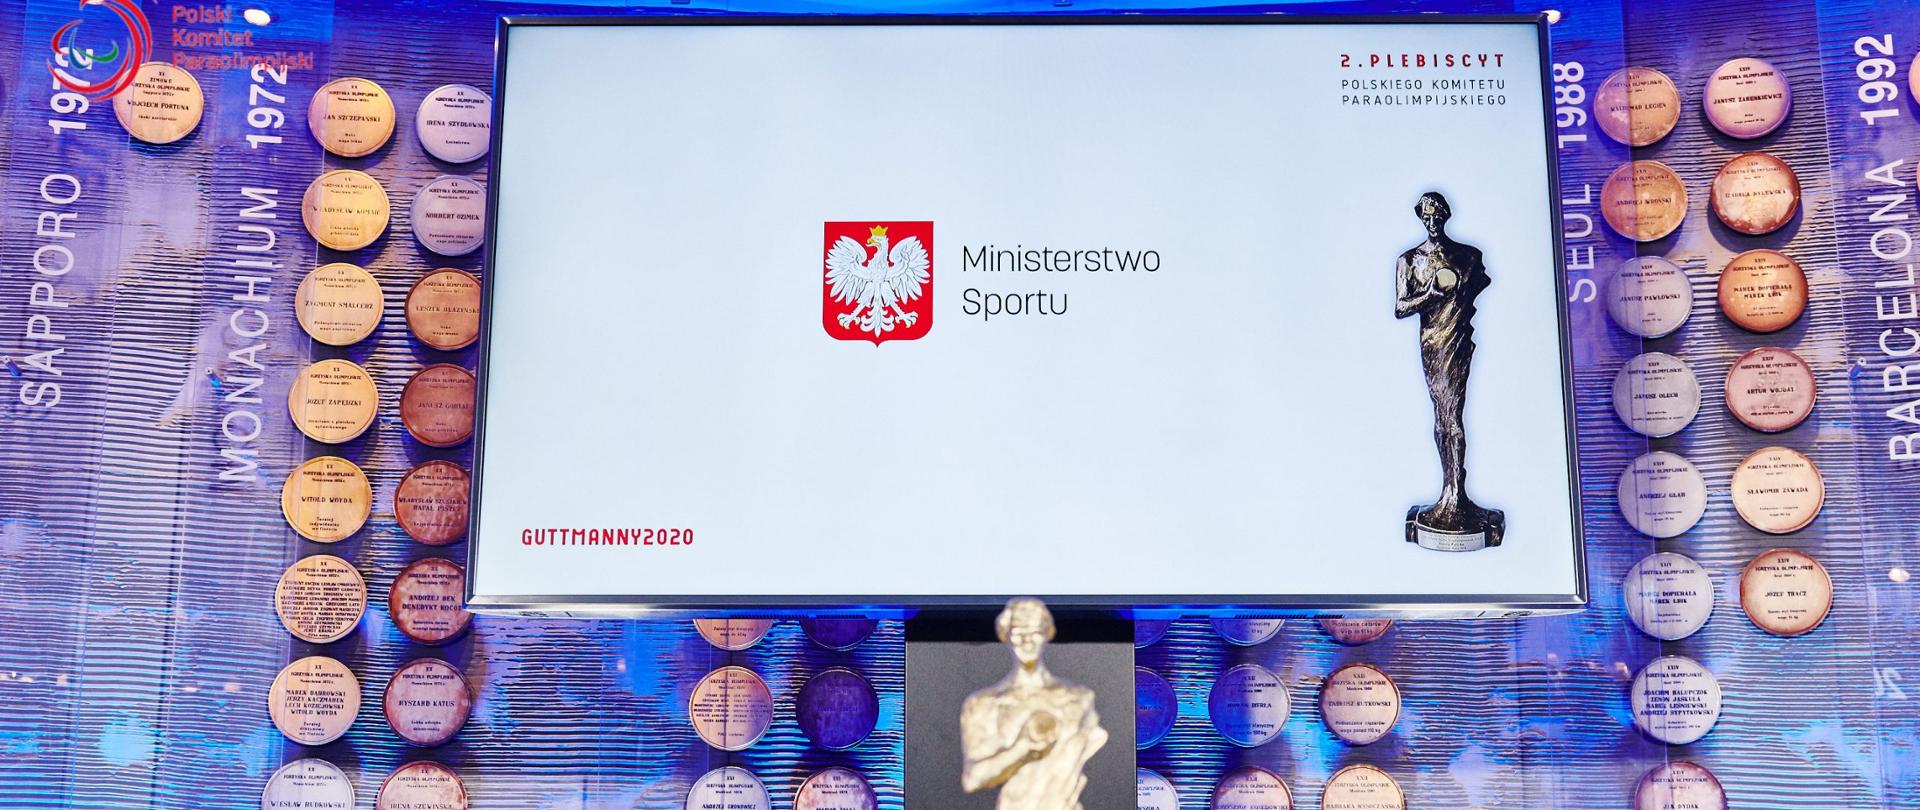 Logotyp Ministerstwa Sportu podczas 2. Plebiscytu Polskiego Komitetu Paraolimpijskiego - Guttmany 2020. 